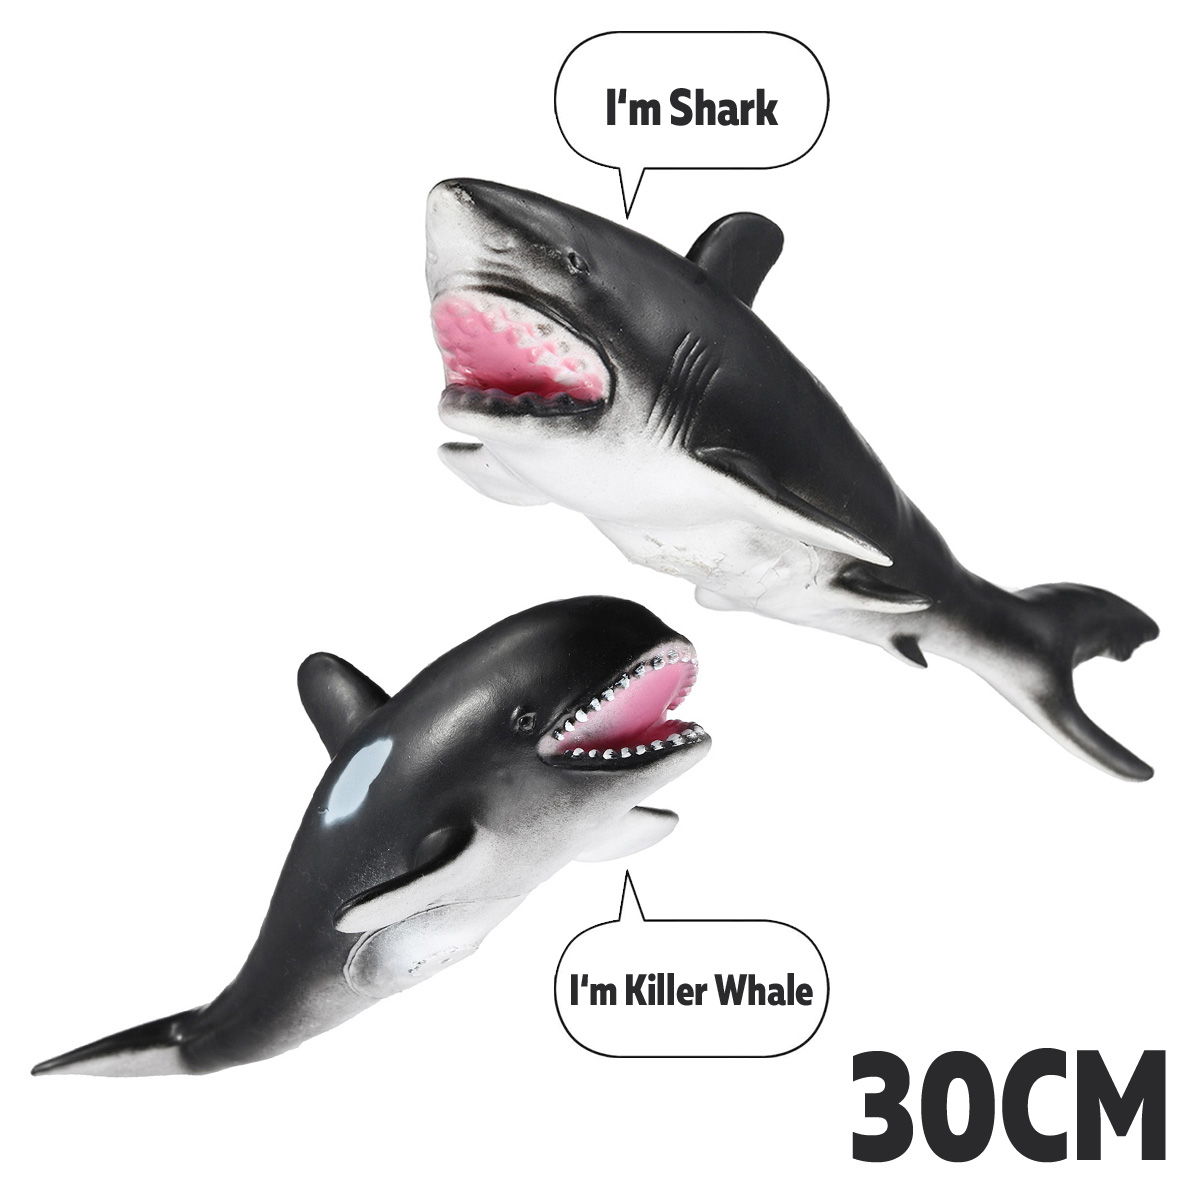 30cm-White-Shark-Killer-Whale-Soft-Model-Toys-Glue-Material-1392887-2